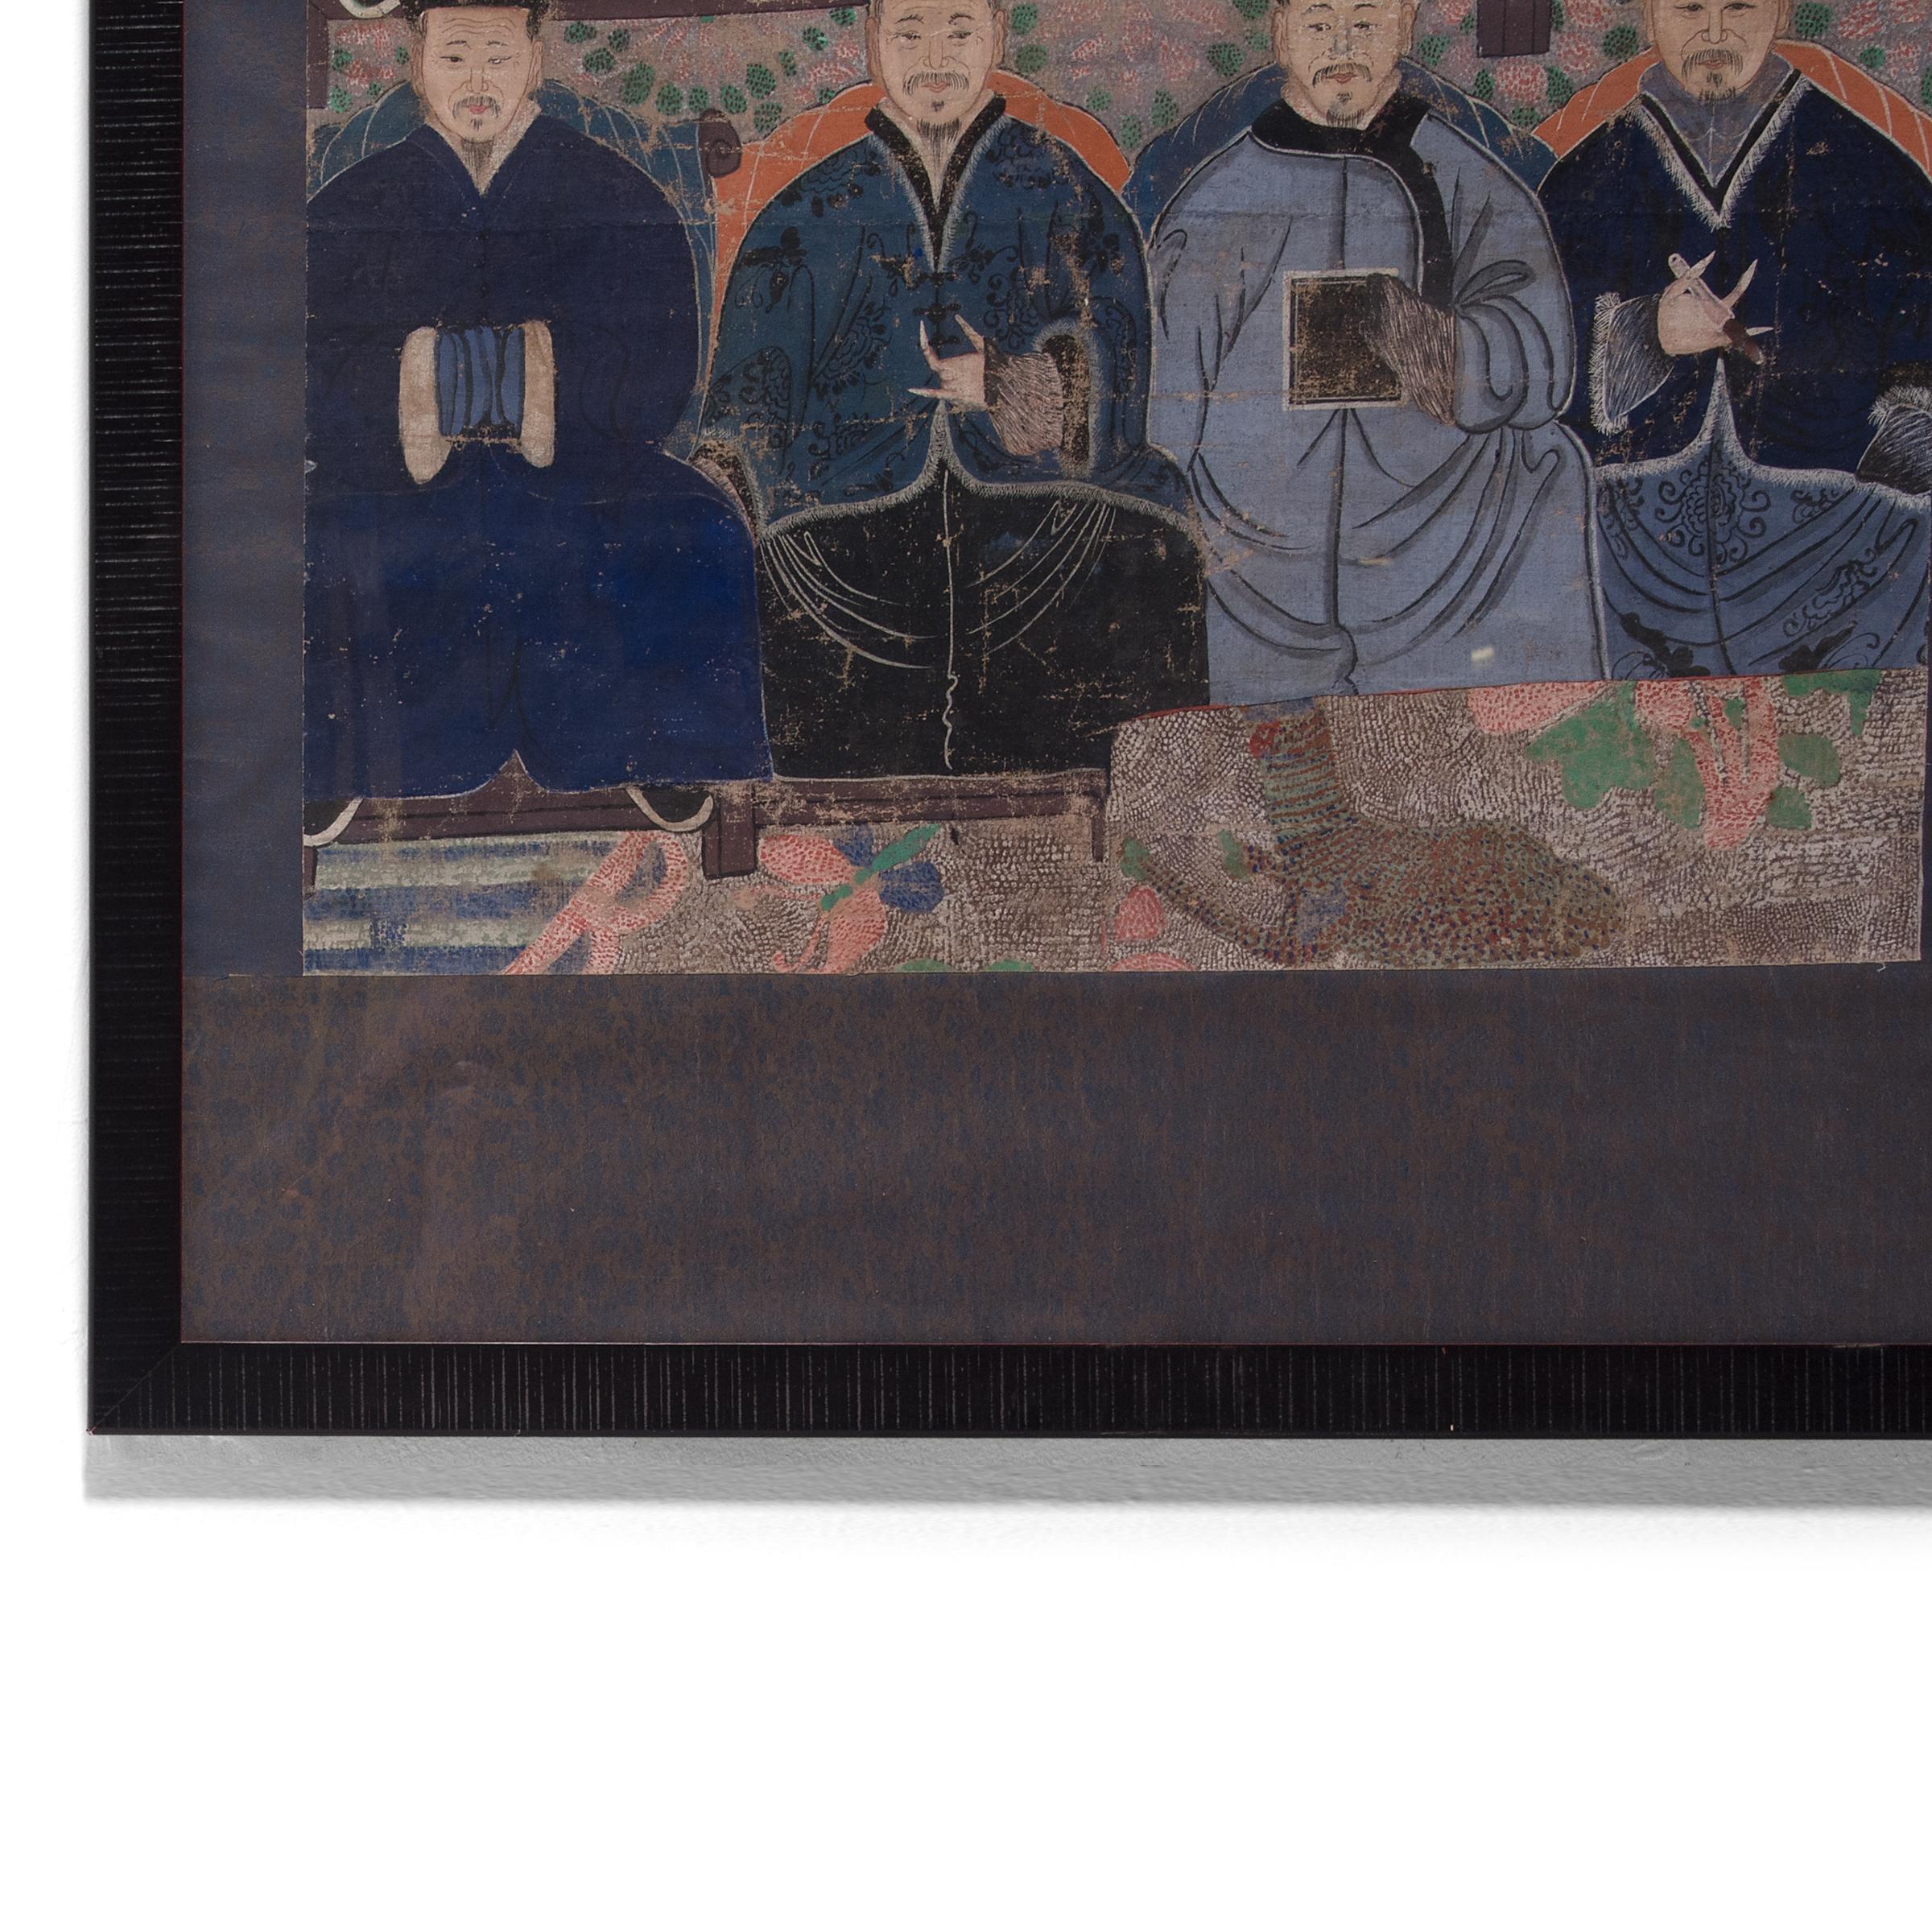 Bei dieser detailreichen Komposition handelt es sich um ein Ahnenporträt aus der späten Qing-Dynastie, das mehrere Generationen der männlichen Vorfahren einer Familie zeigt. Ursprünglich wurde dieses Gemälde von einem passenden Porträt einer